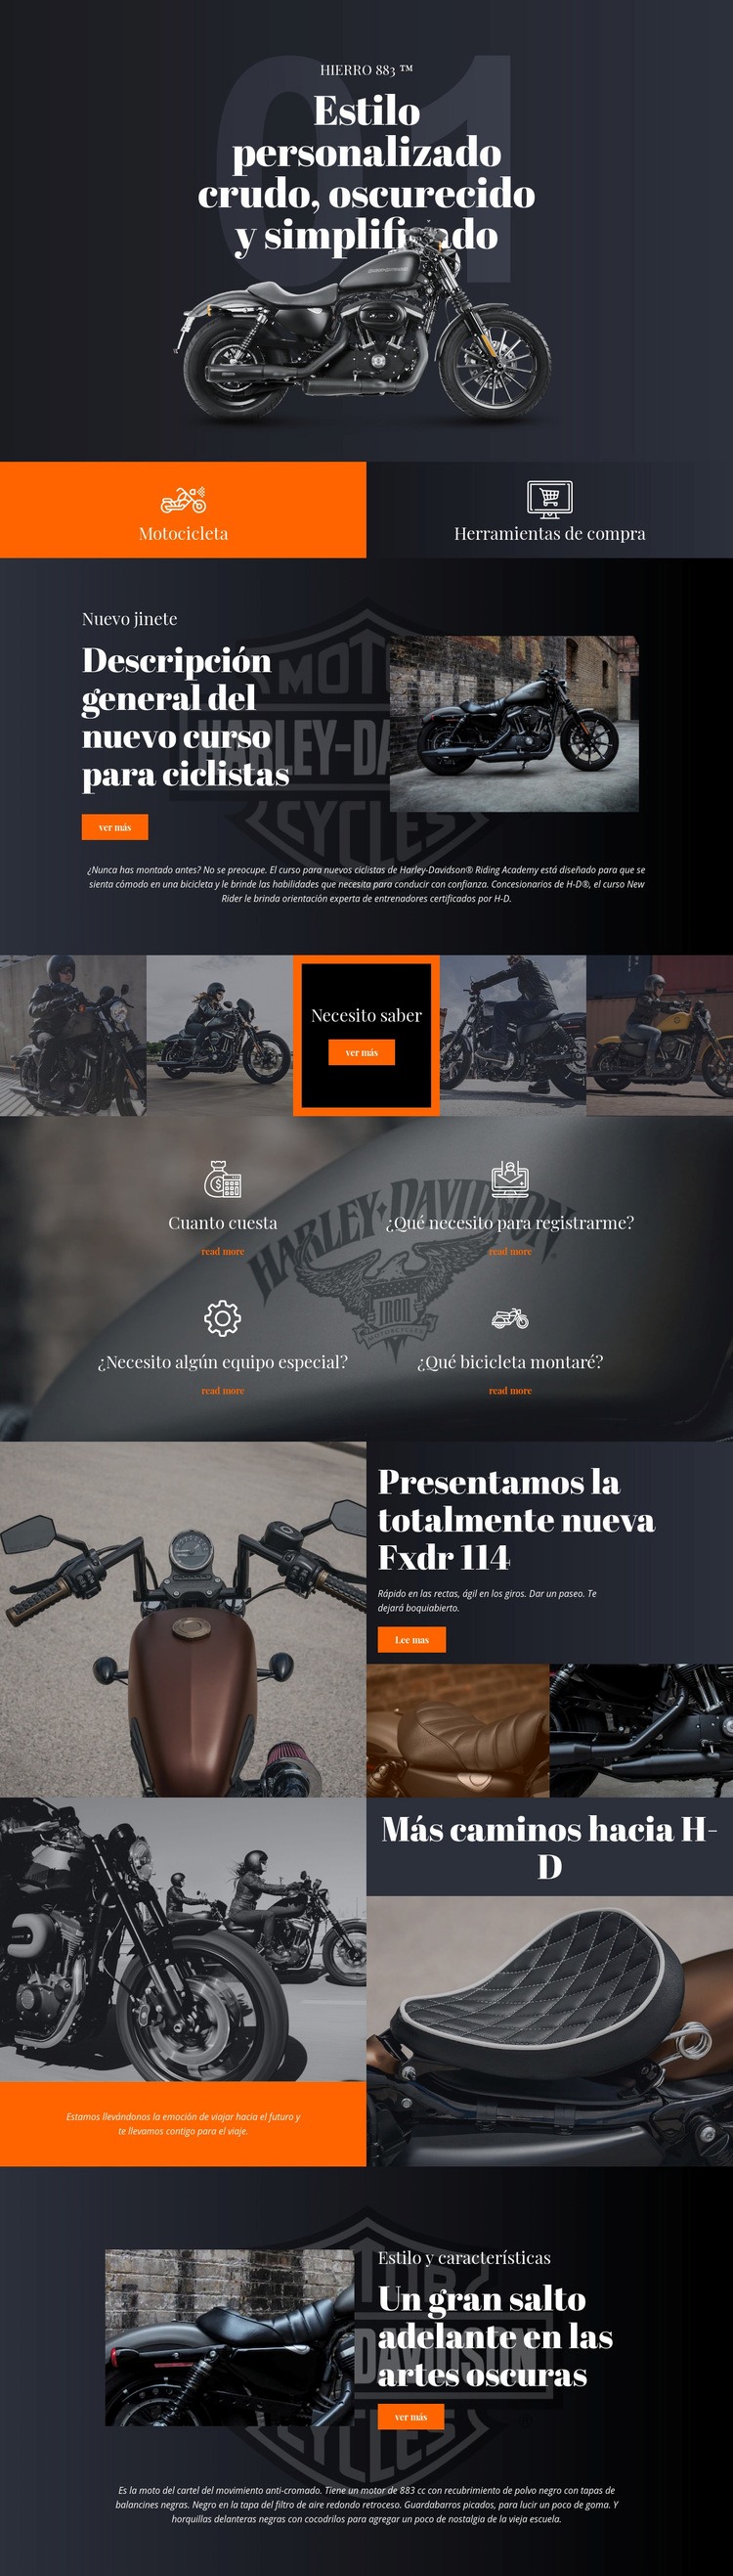 Harley Davidson Diseño de páginas web